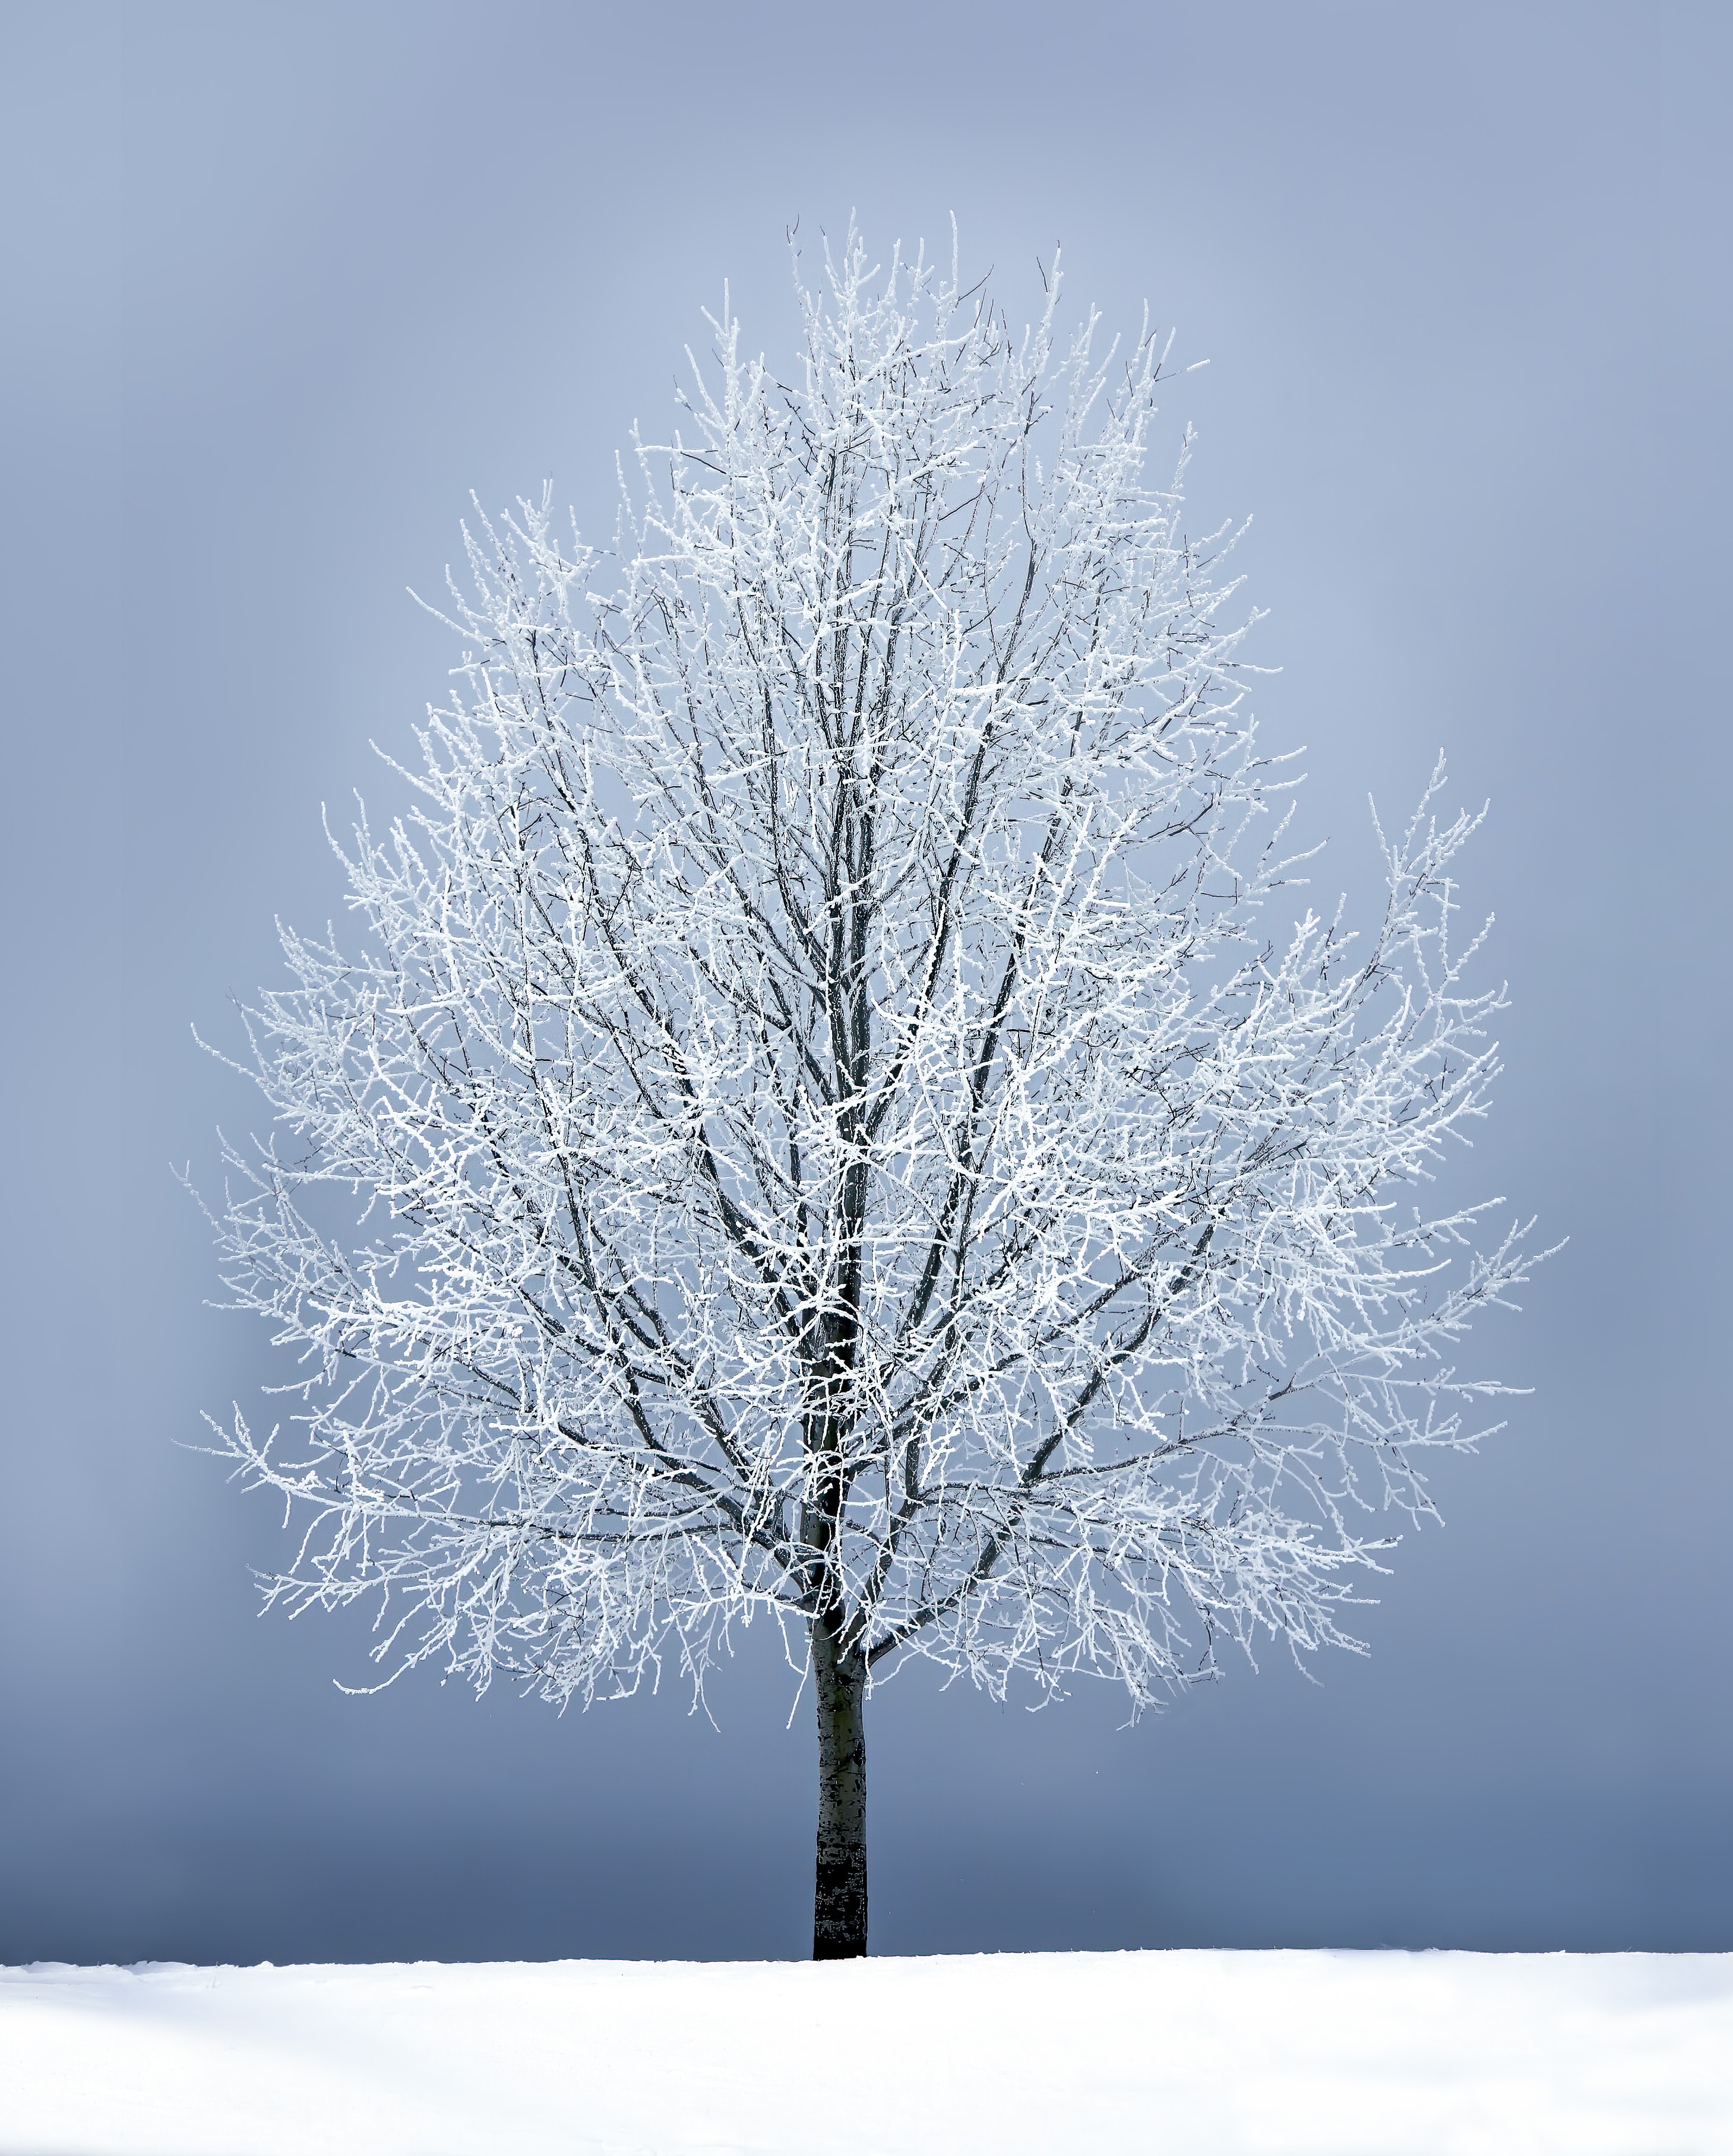 Скачать обои бесплатно Снег, Снежный, Ветви, Природа, Дерево картинка на рабочий стол ПК